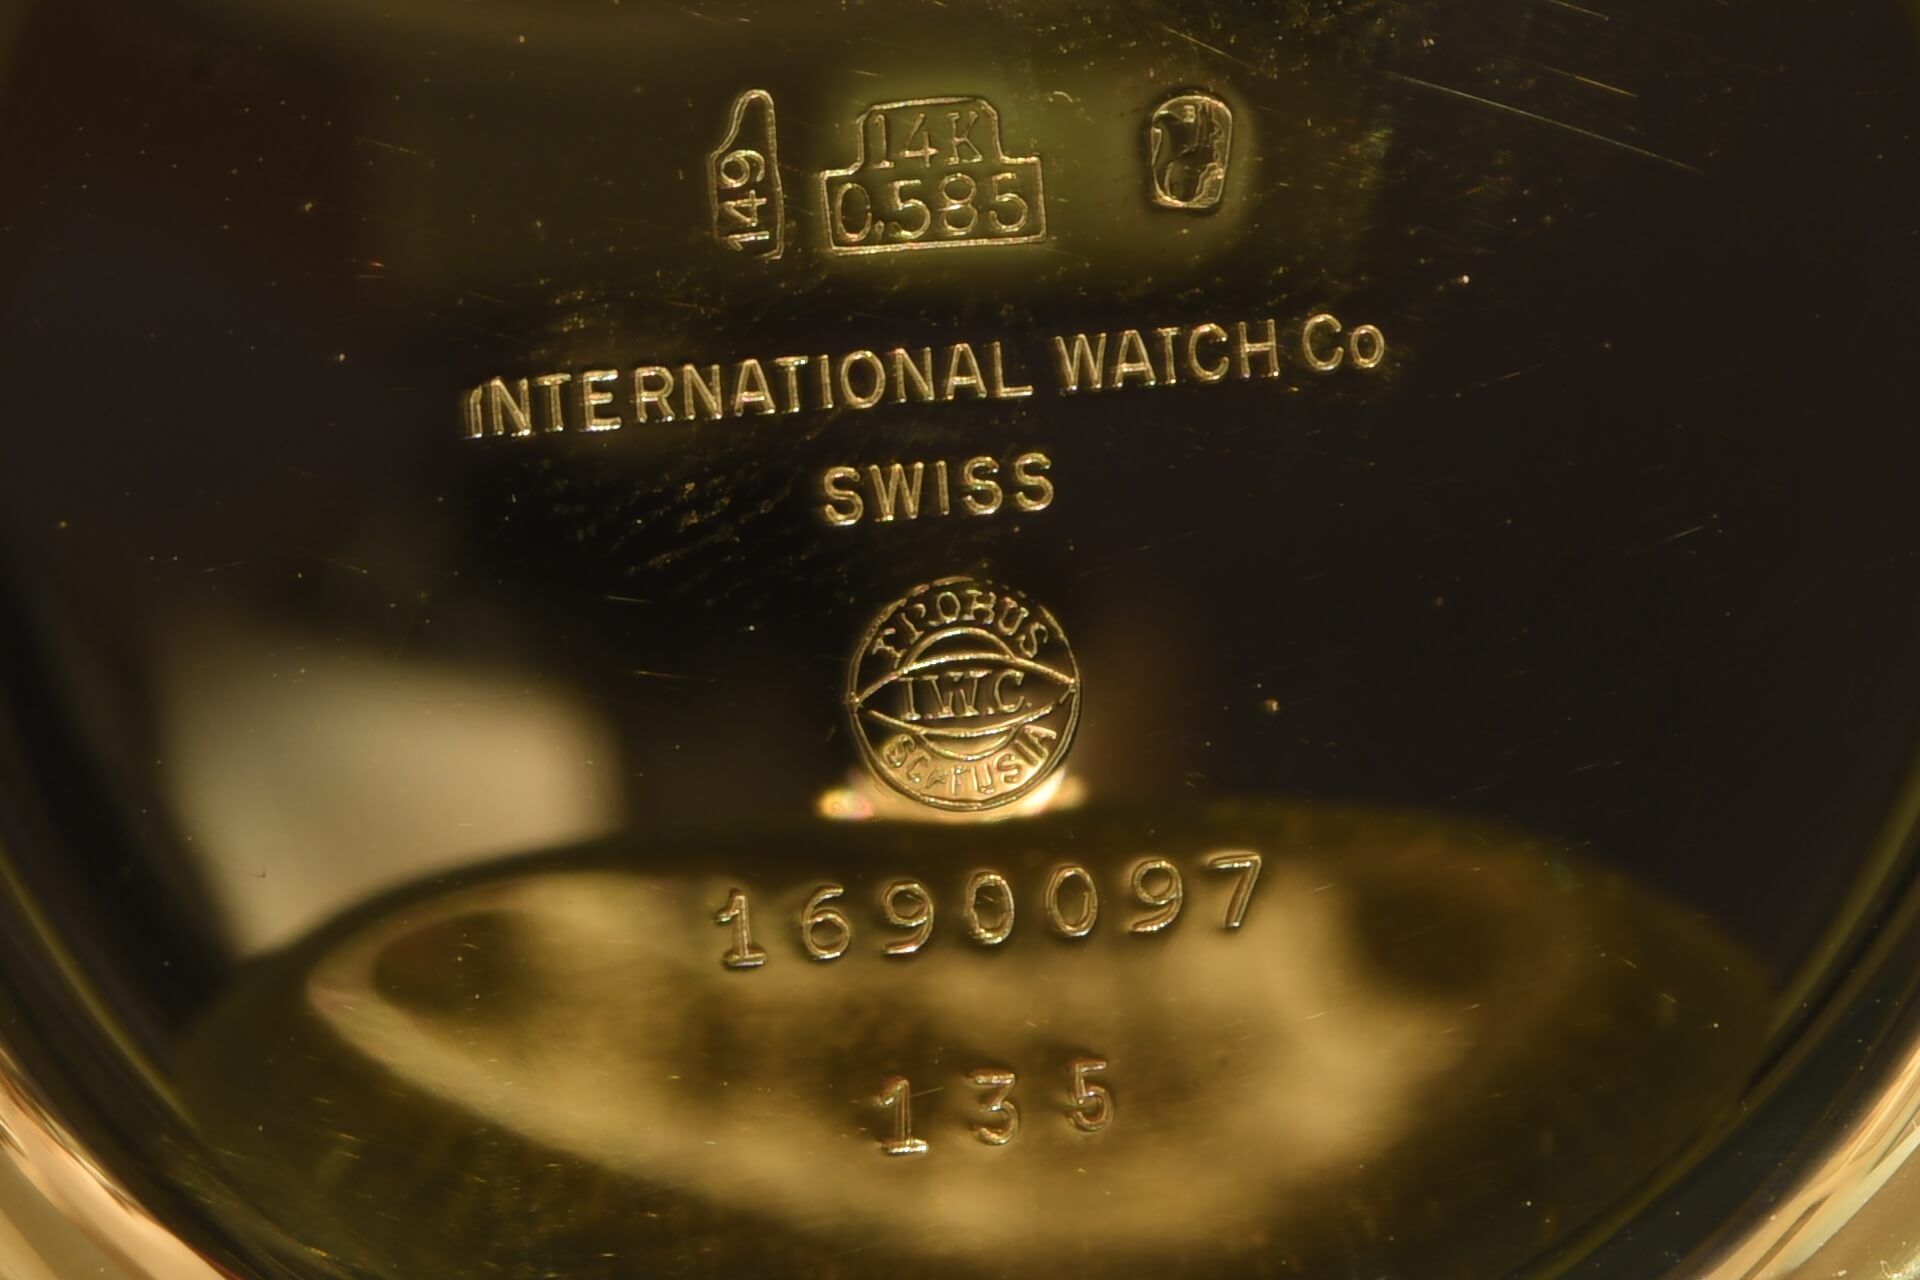 Taschenuhr International Watch & Co Schaffhausen|Pocket Watch International Watch & Co Schaffhausen - Image 5 of 5